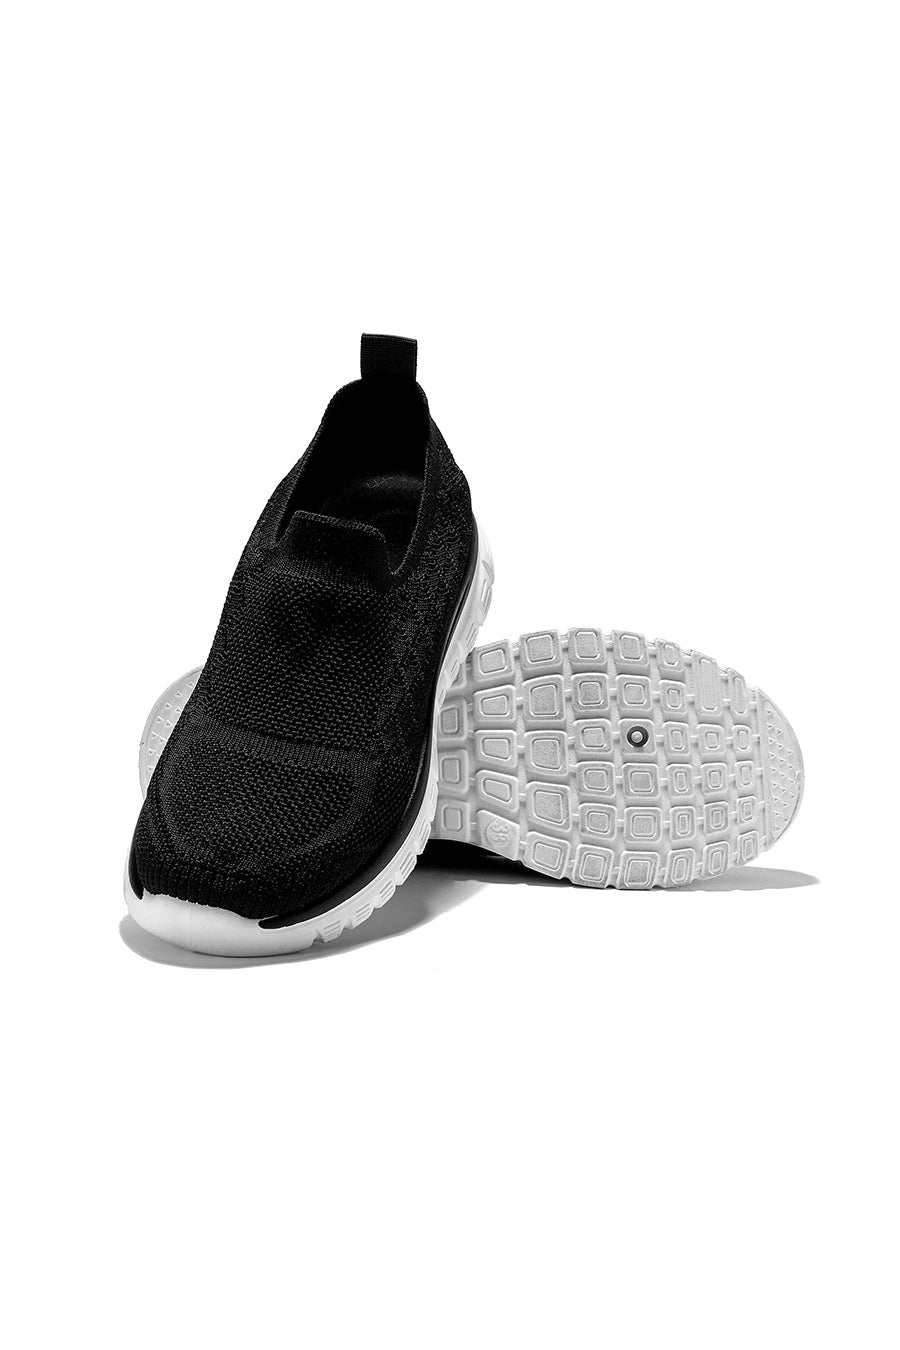 JOMIX Scarpe Donna Senza Lacci Sneakers Sportiva Casual Trspirante SD9139